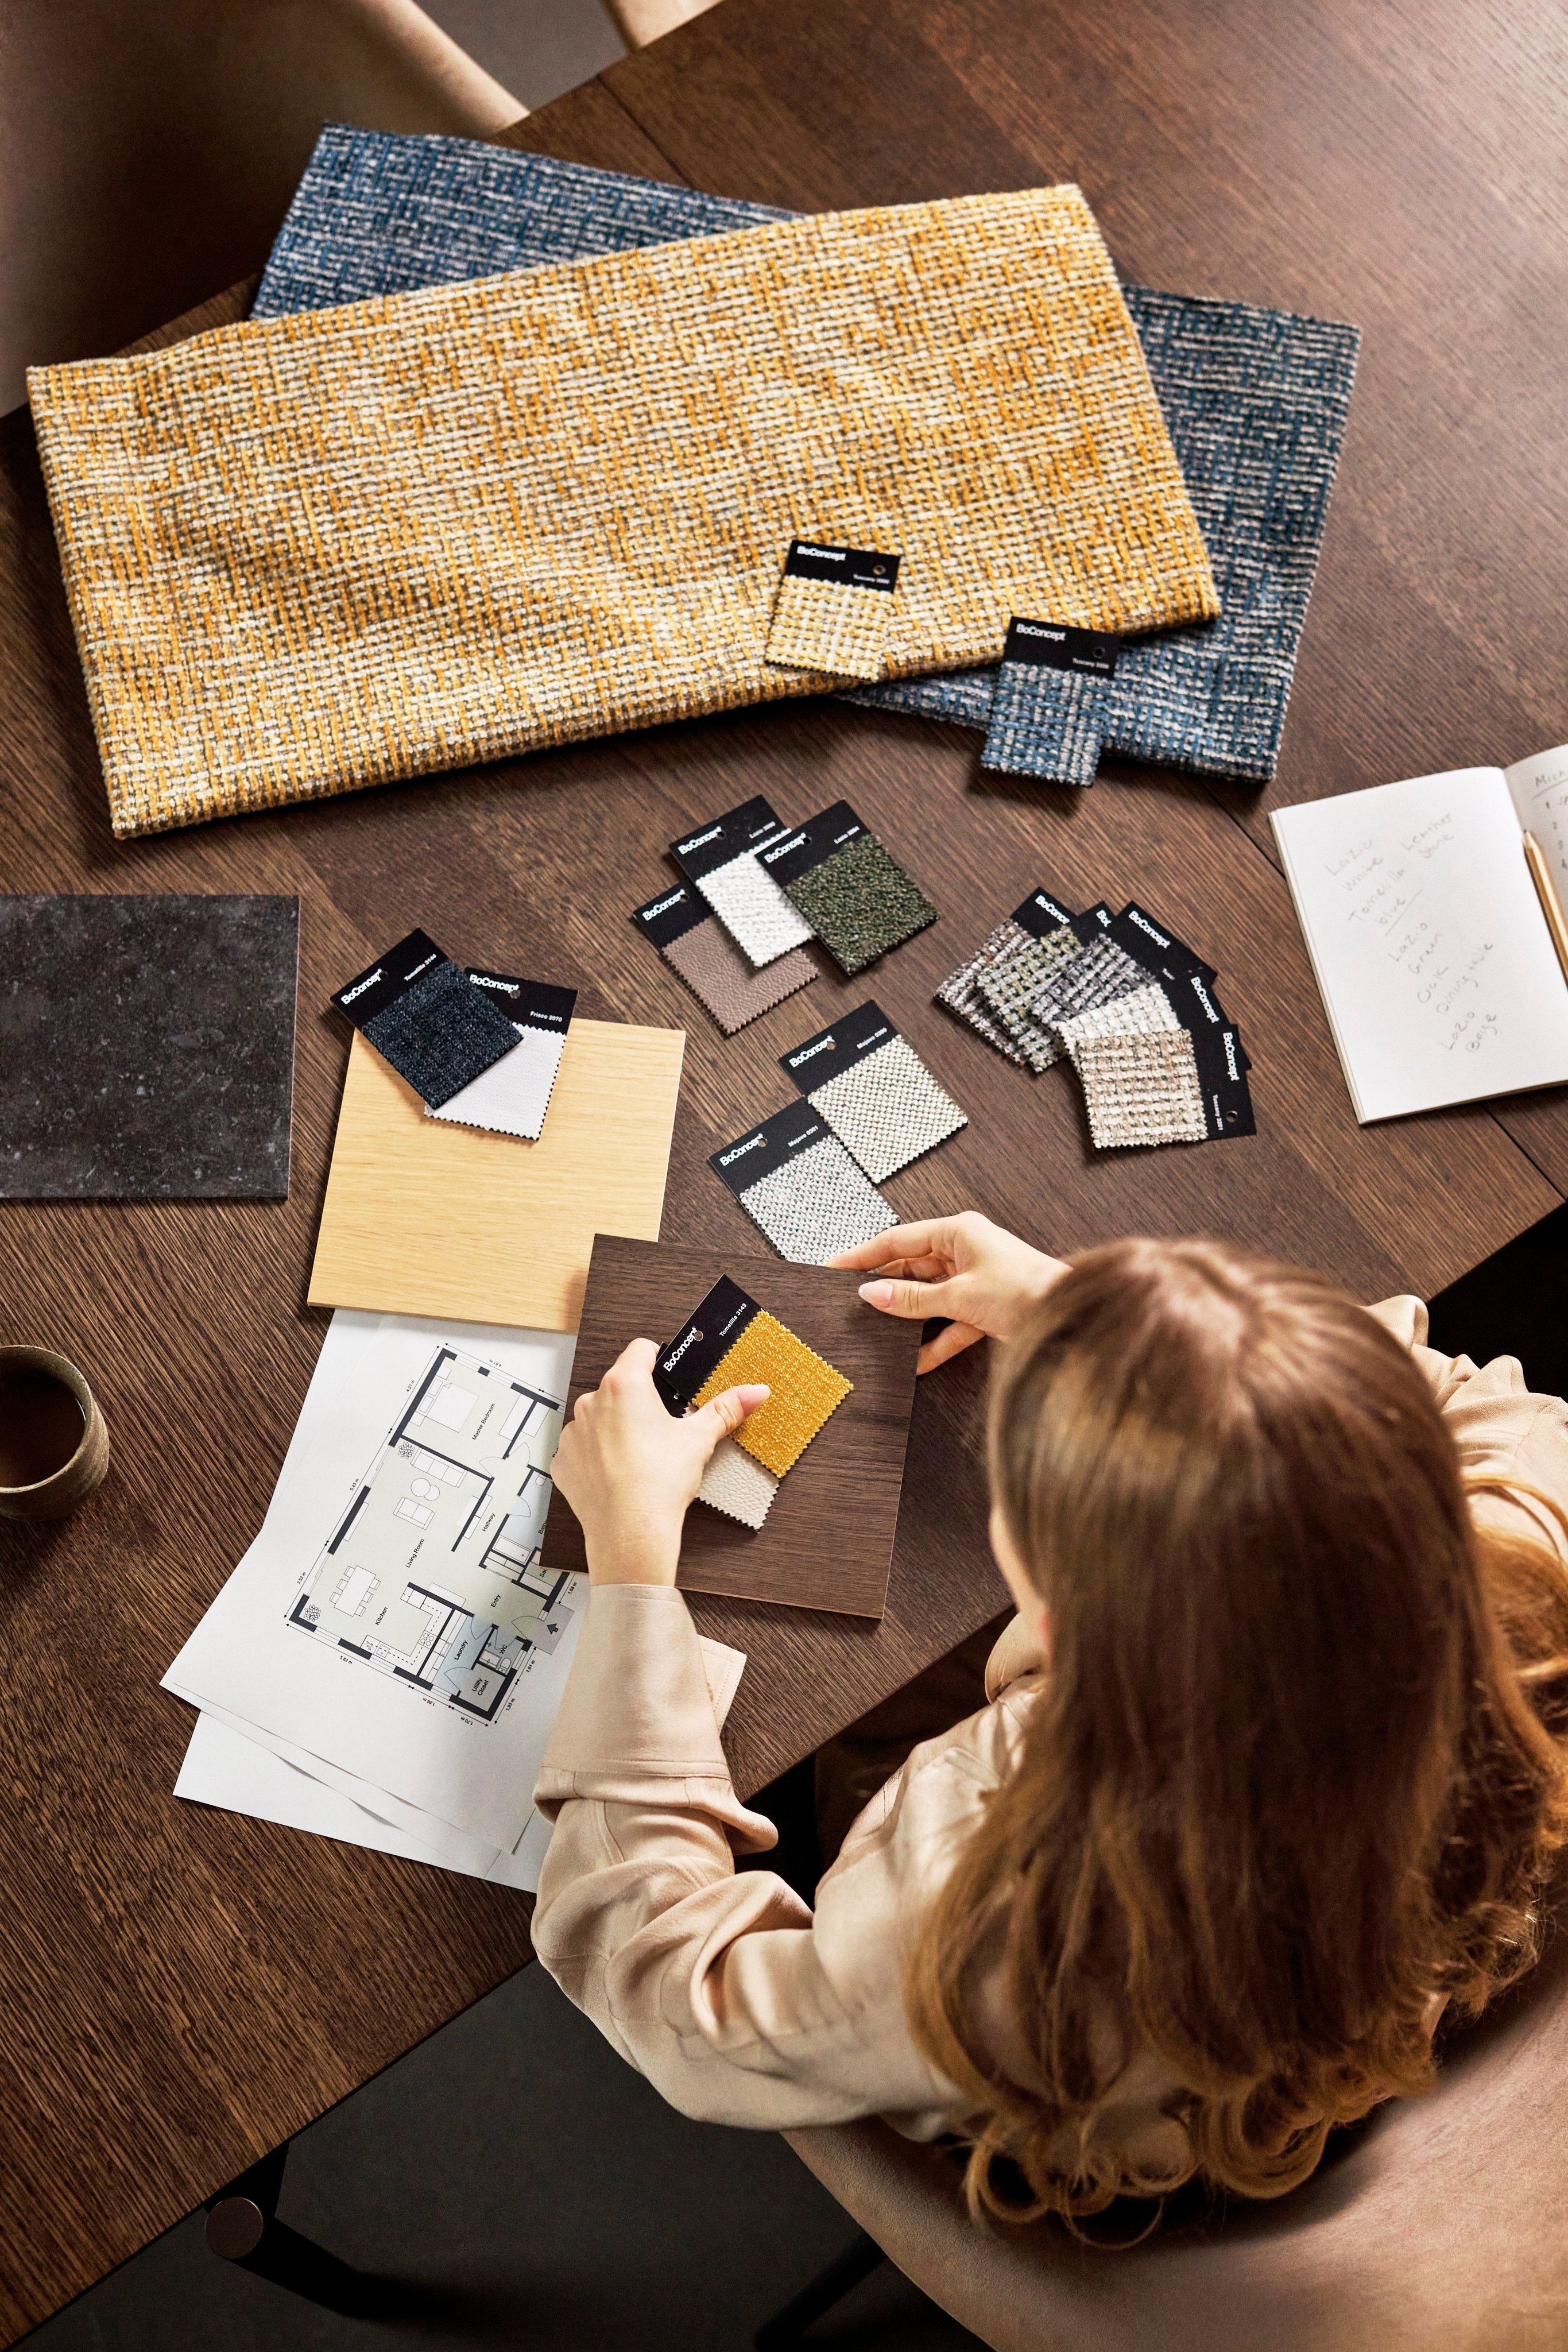 Дизайнер выбирает образцы ткани на деревянном столе с планом и заметками.